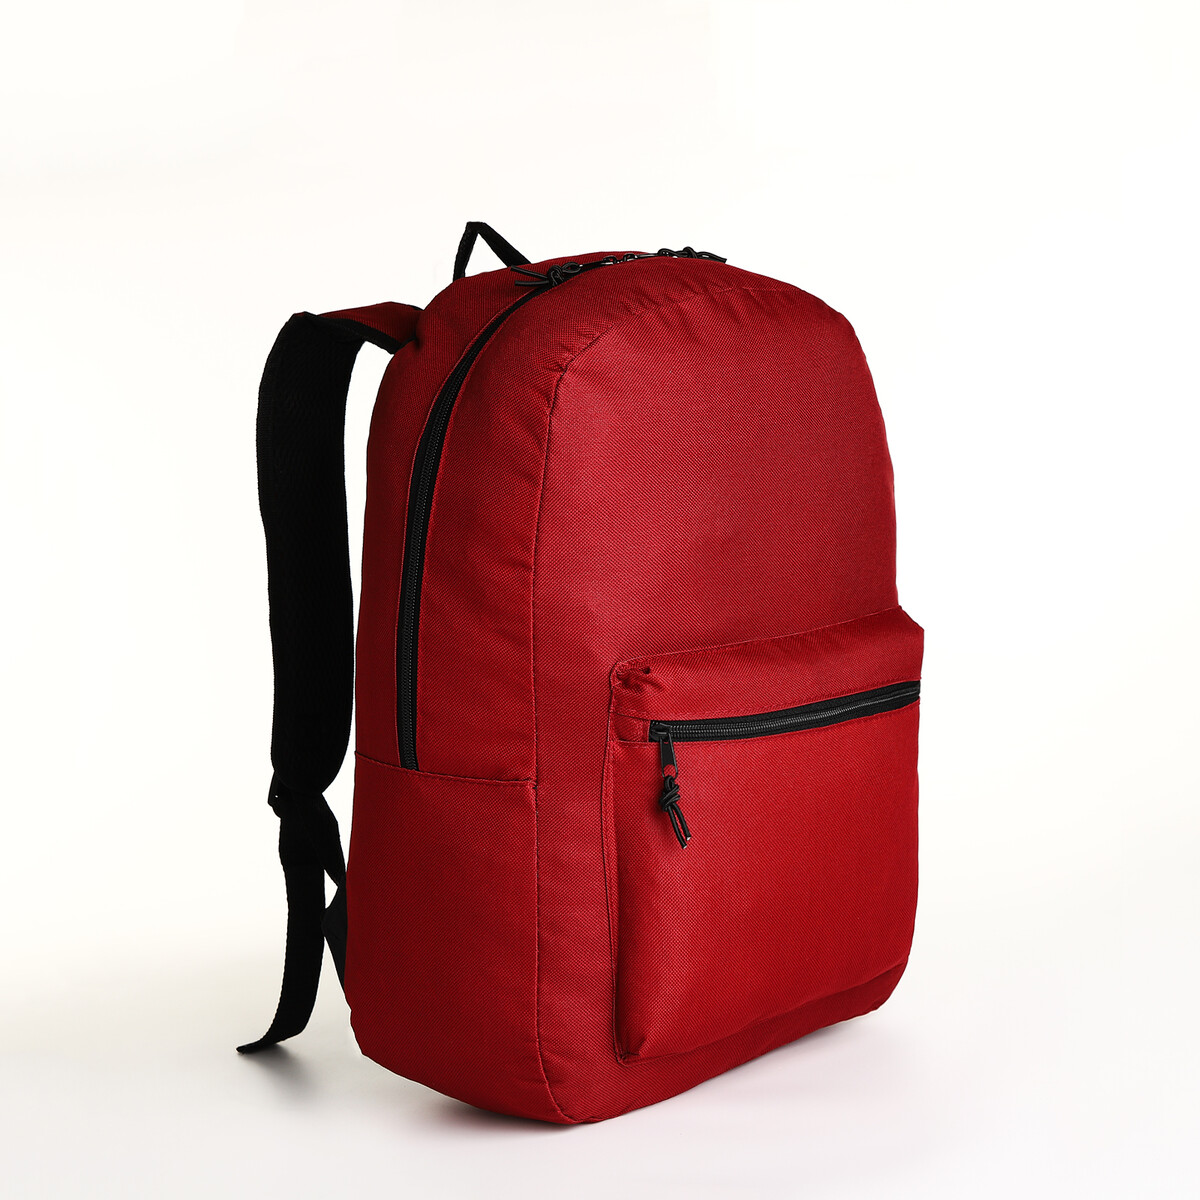 Рюкзак молодежный на молнии, наружный карман, цвет бордовый pixel bag рюкзак с led дисплеем pixel plus red line бордовый